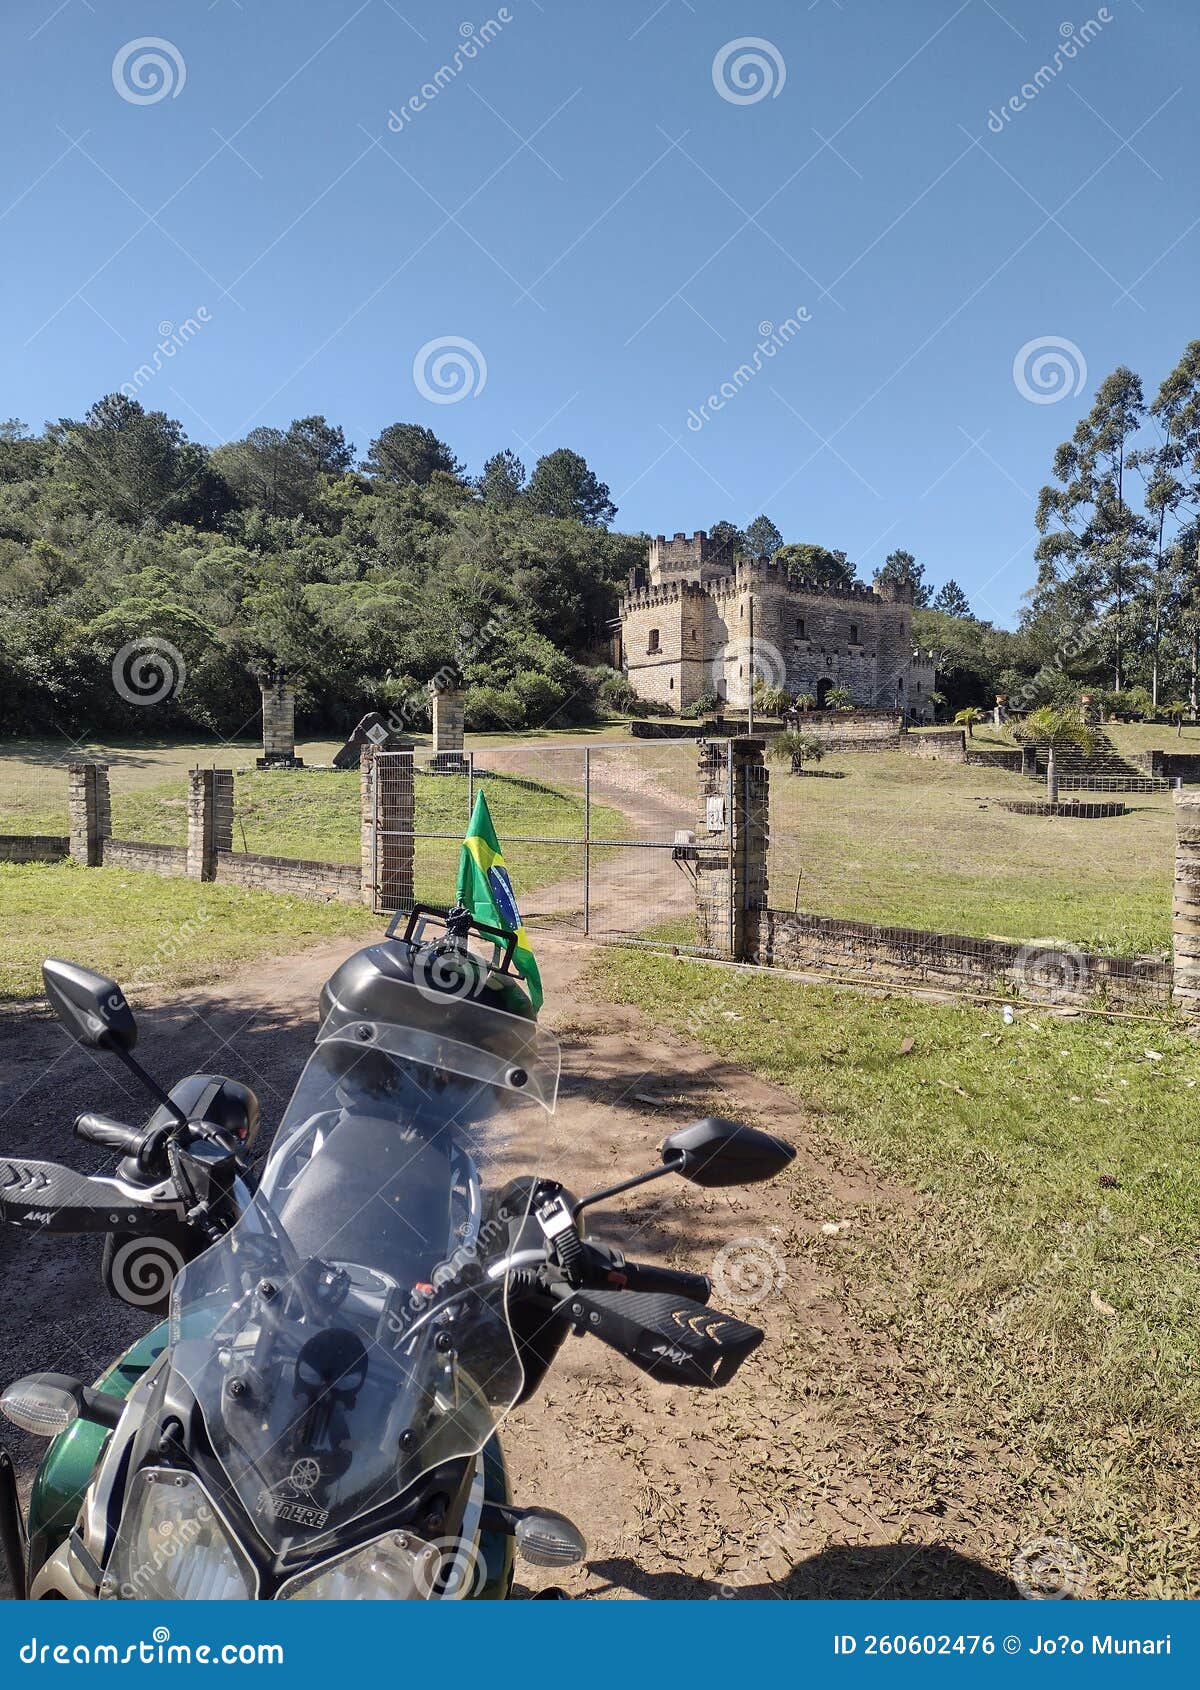 the castle estrada do mar brazil motorcycle